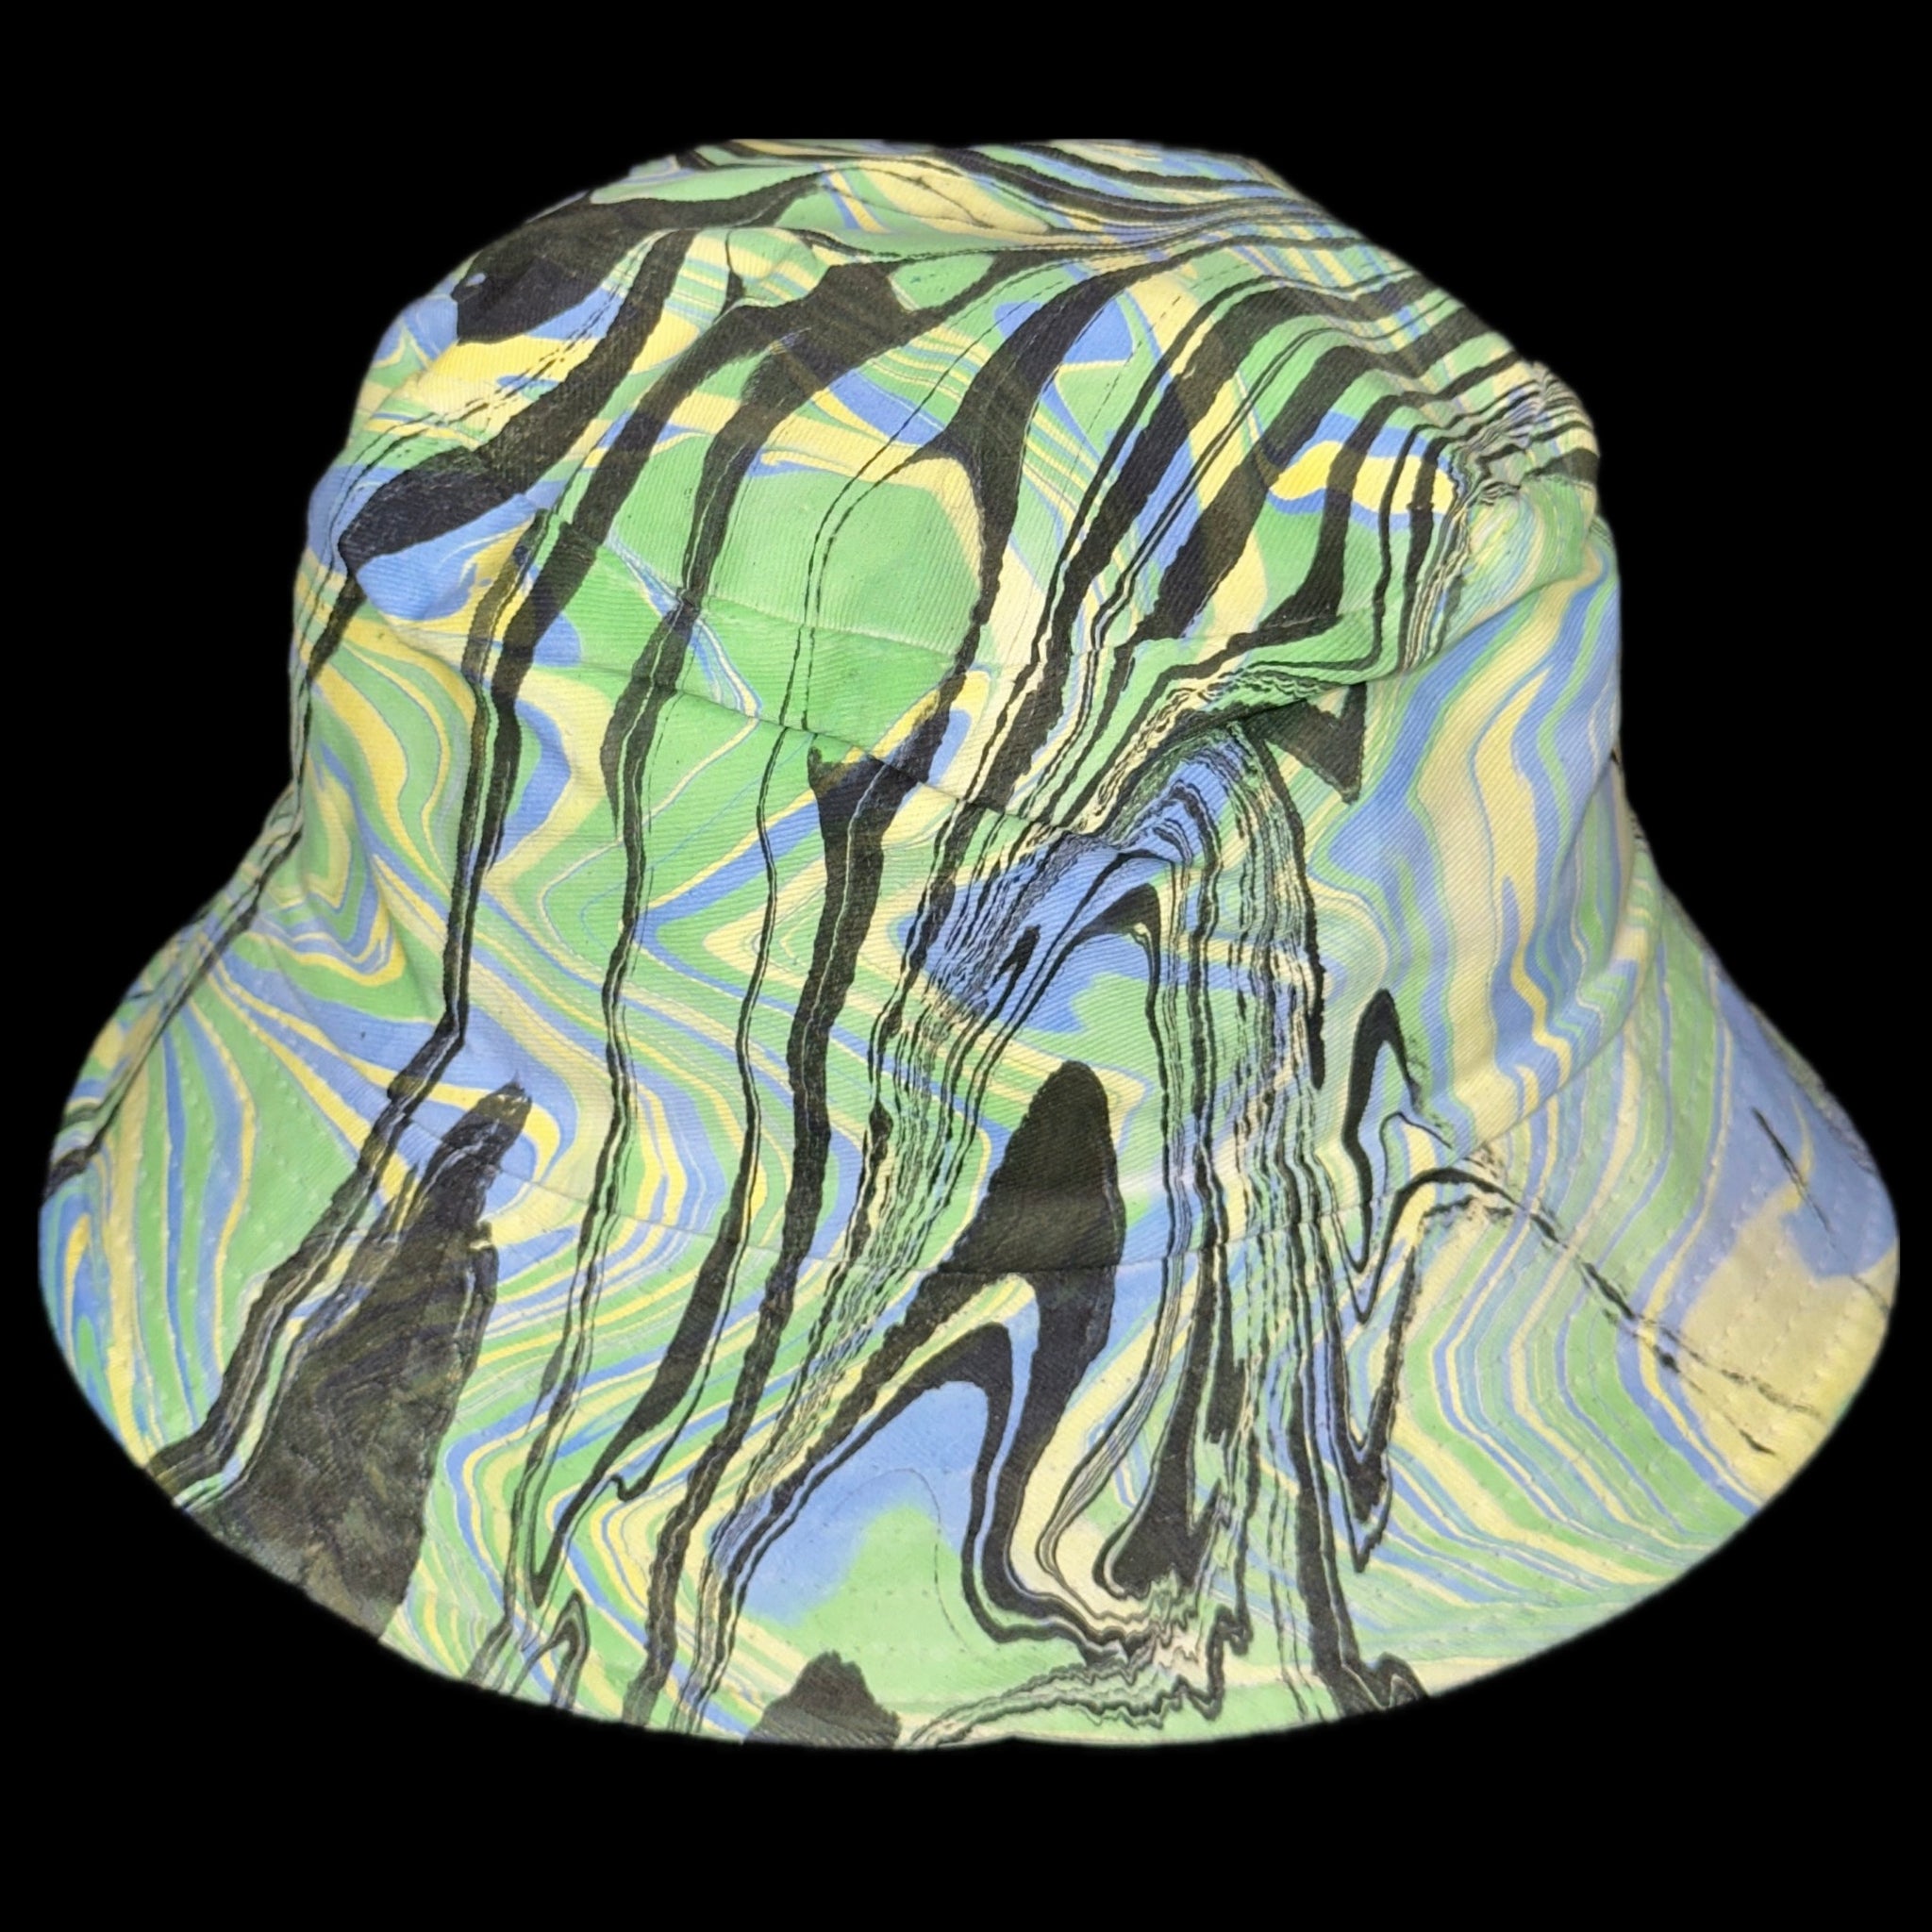 Bucket hat “Double Dip” (UV REACTIVE)